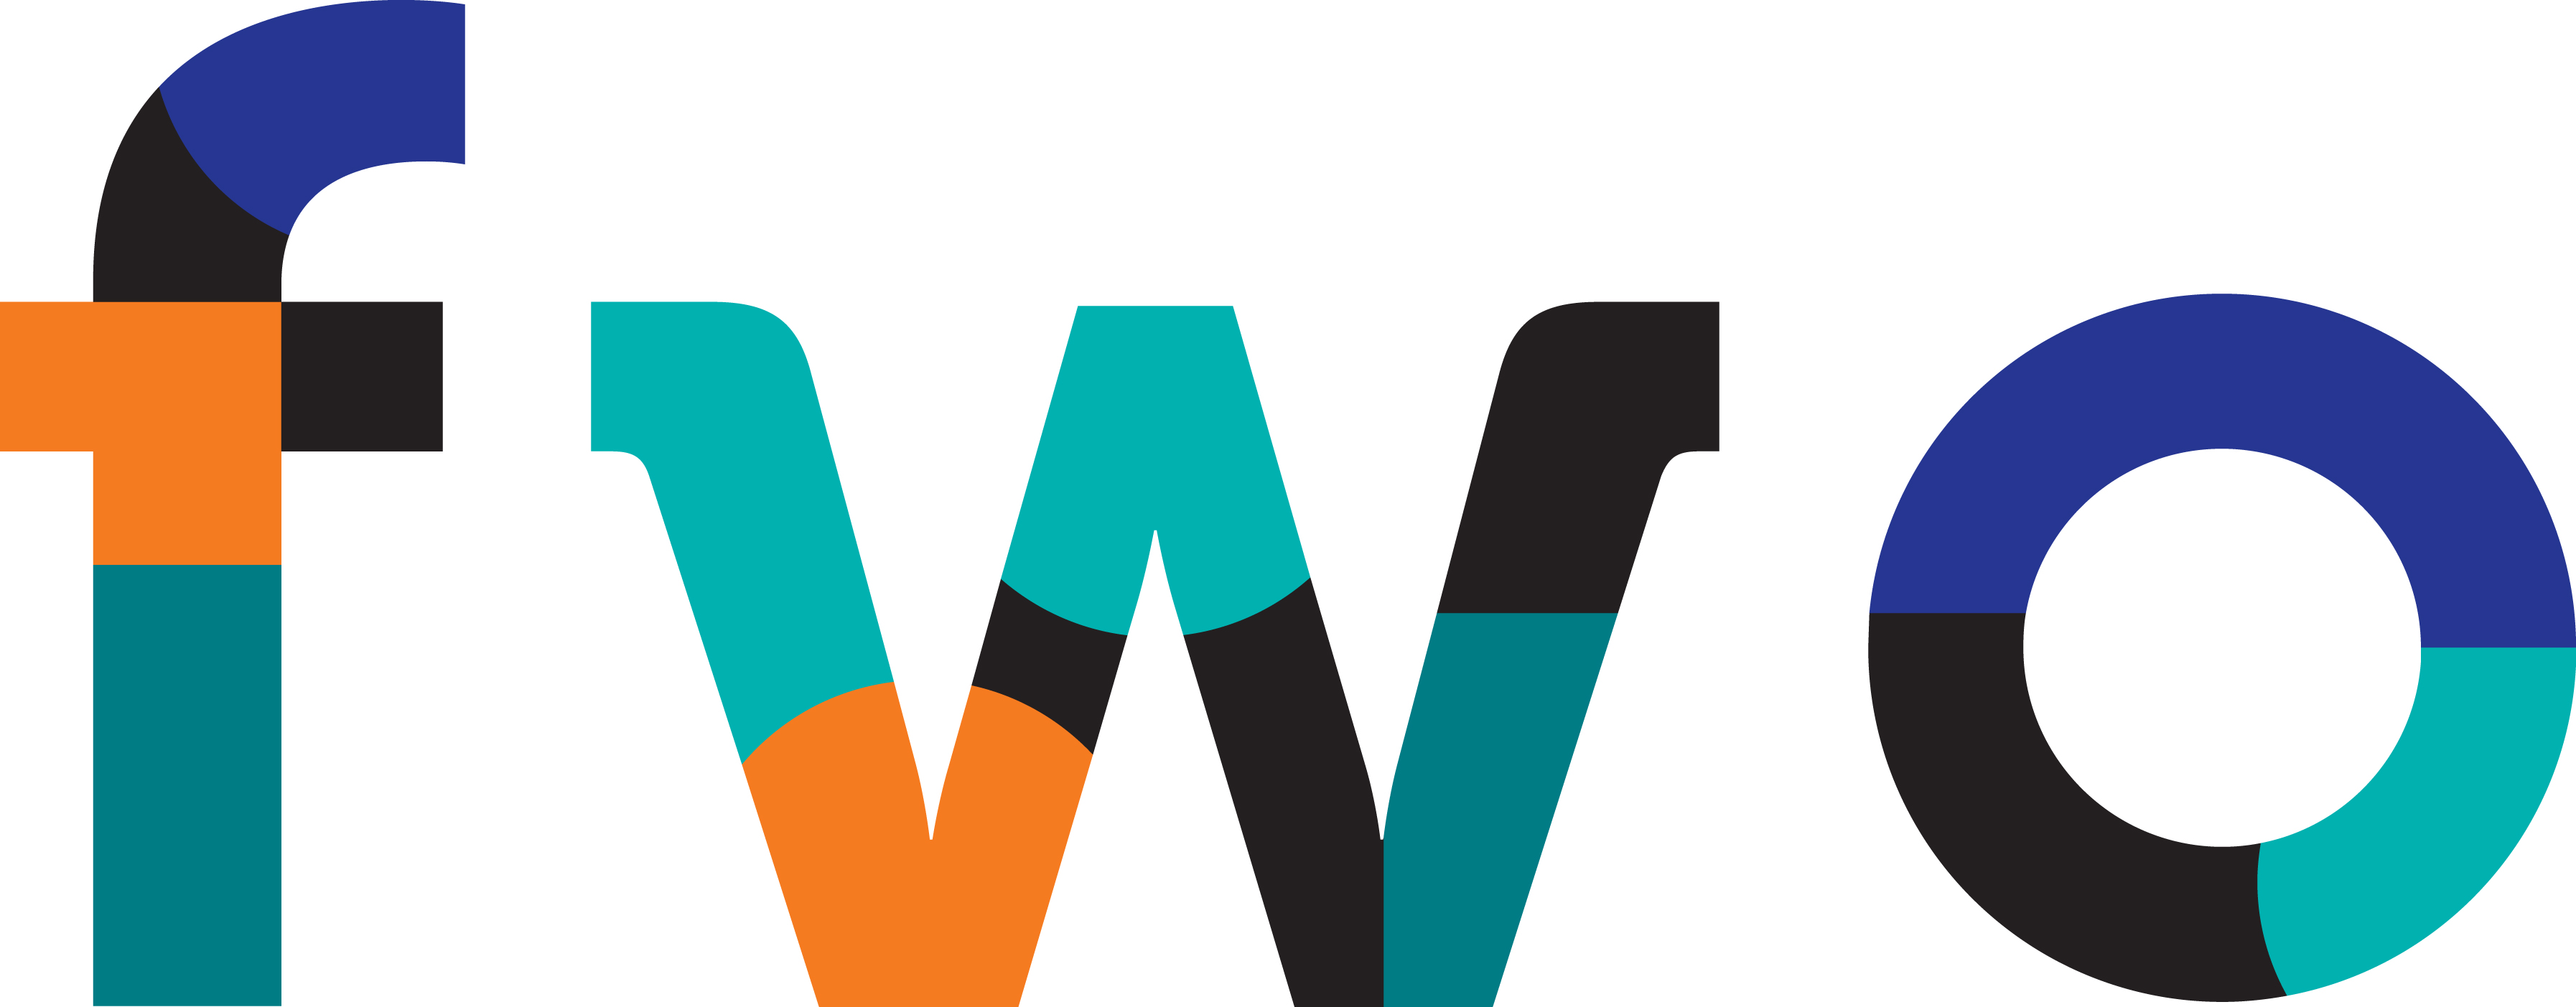 FWO logo